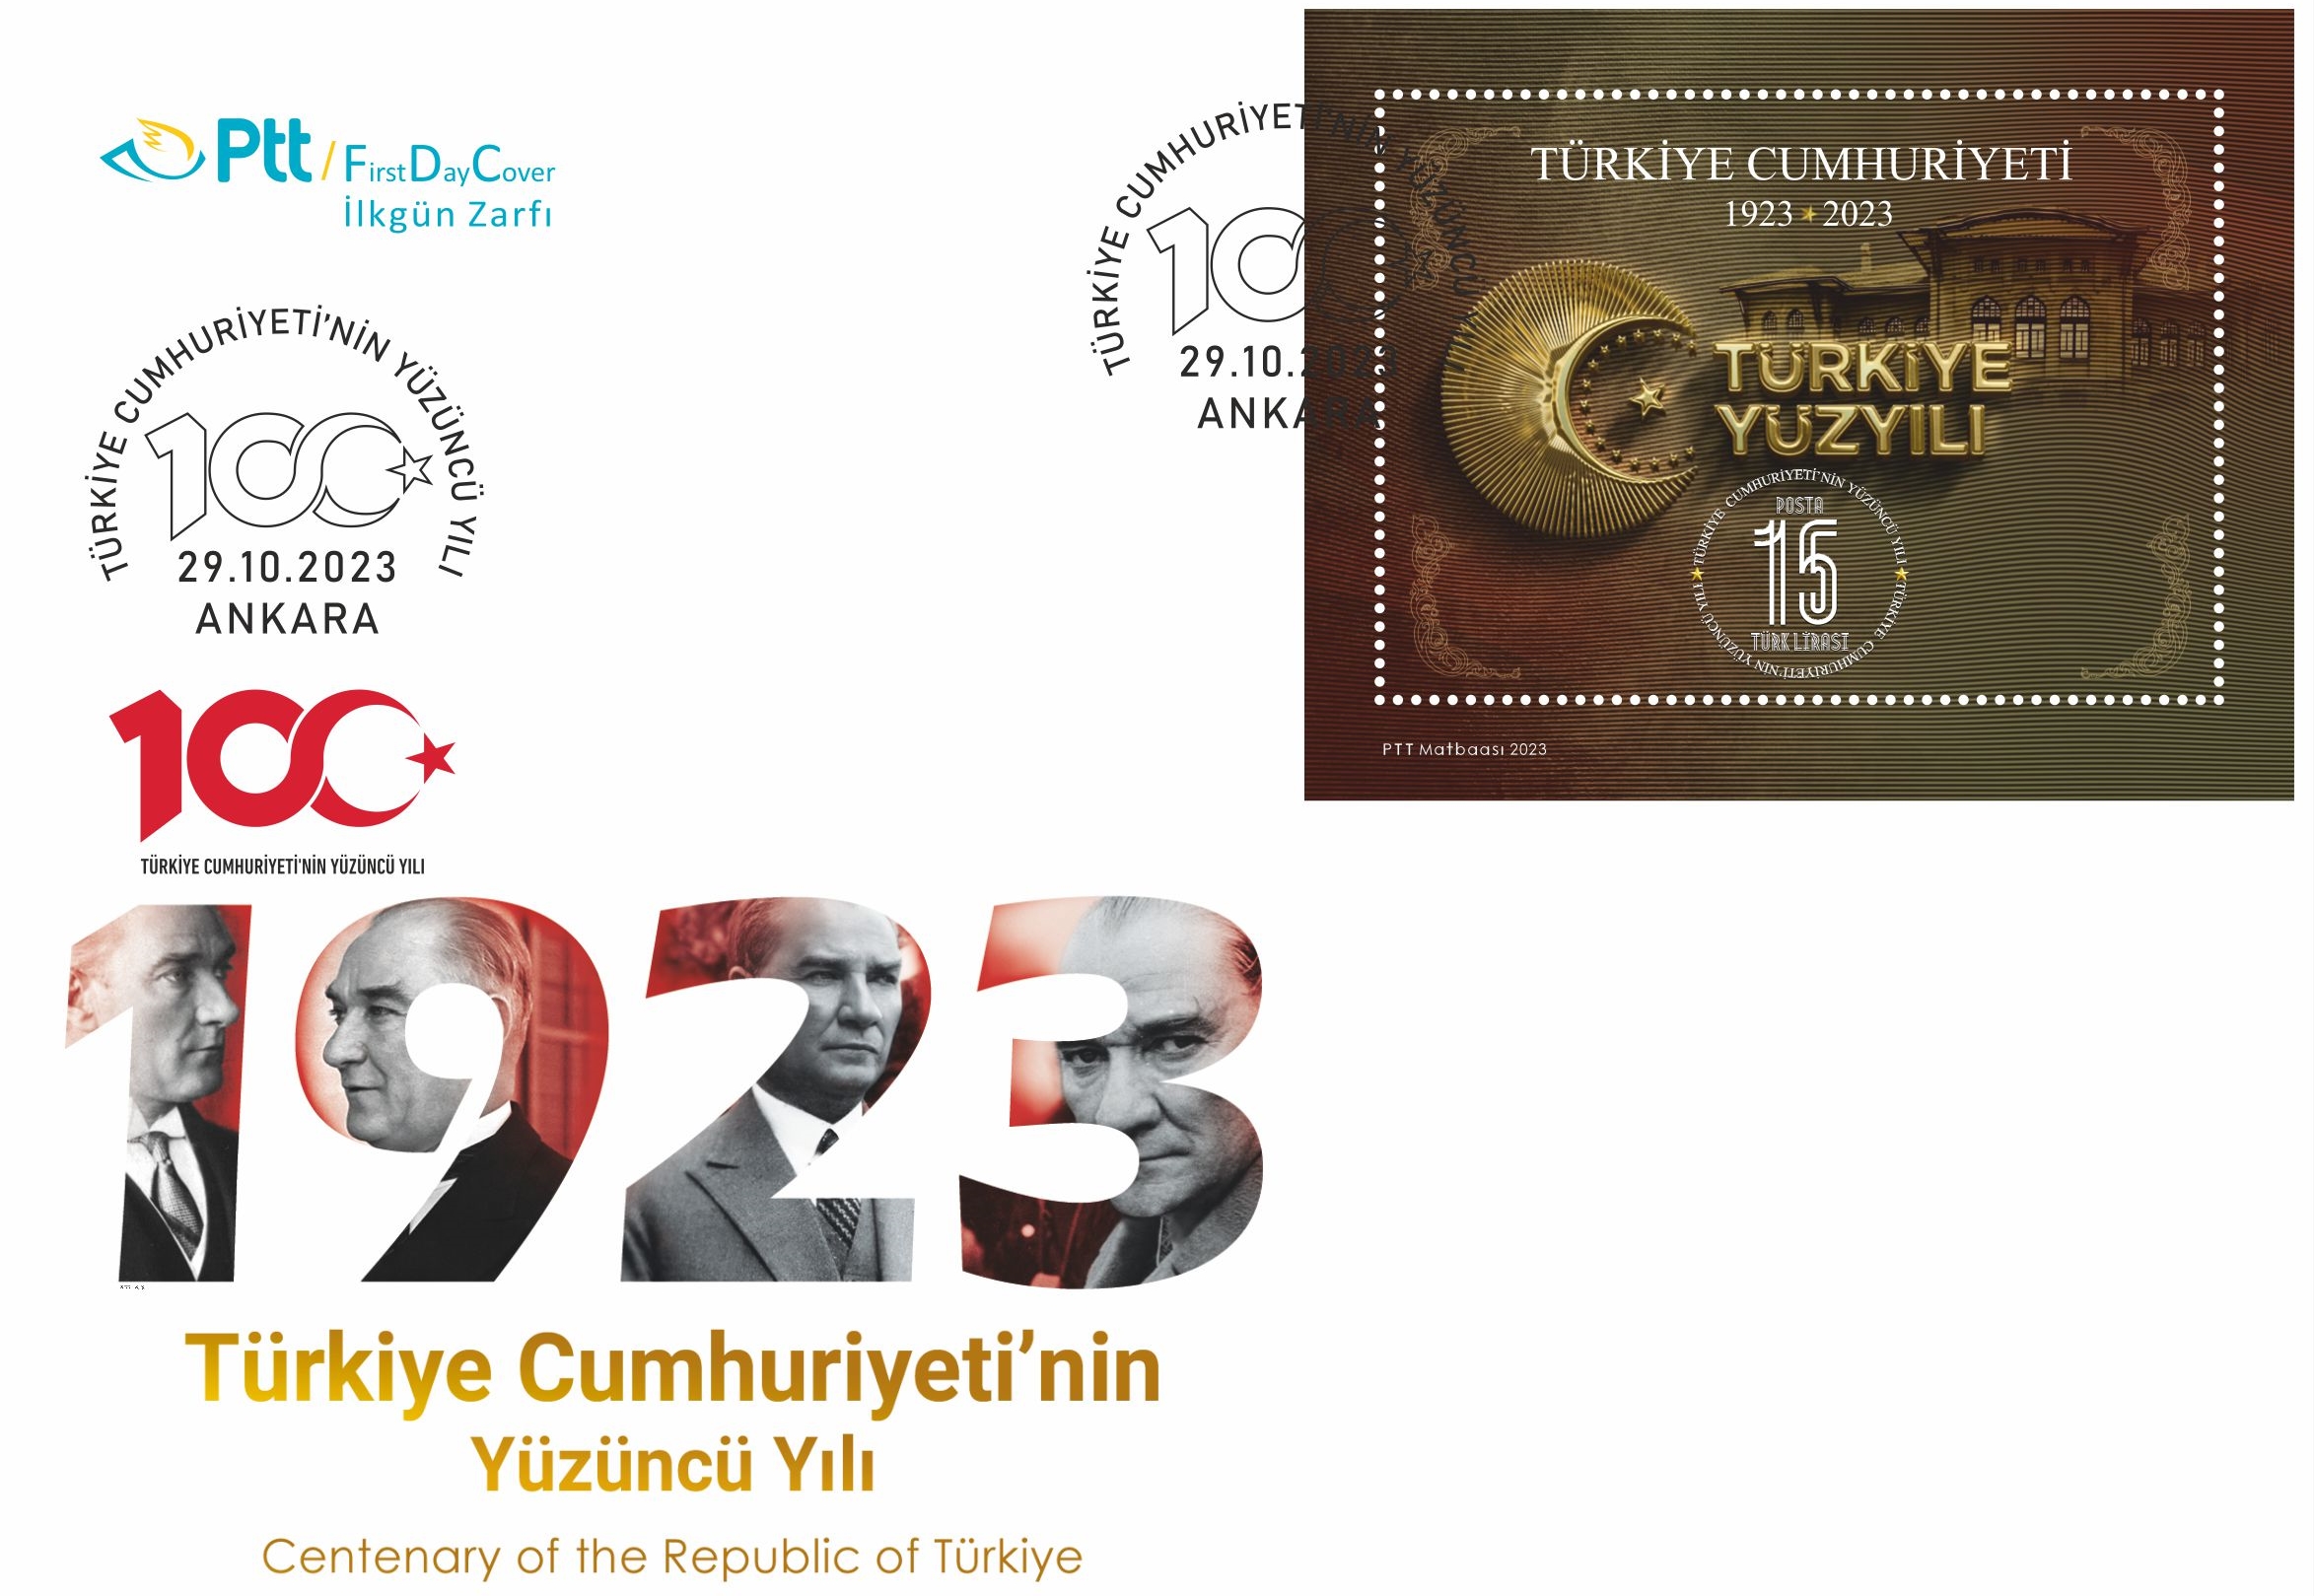 PTT’den “Türkiye Cumhuriyeti’nin Yüzüncü Yılı” konulu anma pulu ve ilk gün zarfı